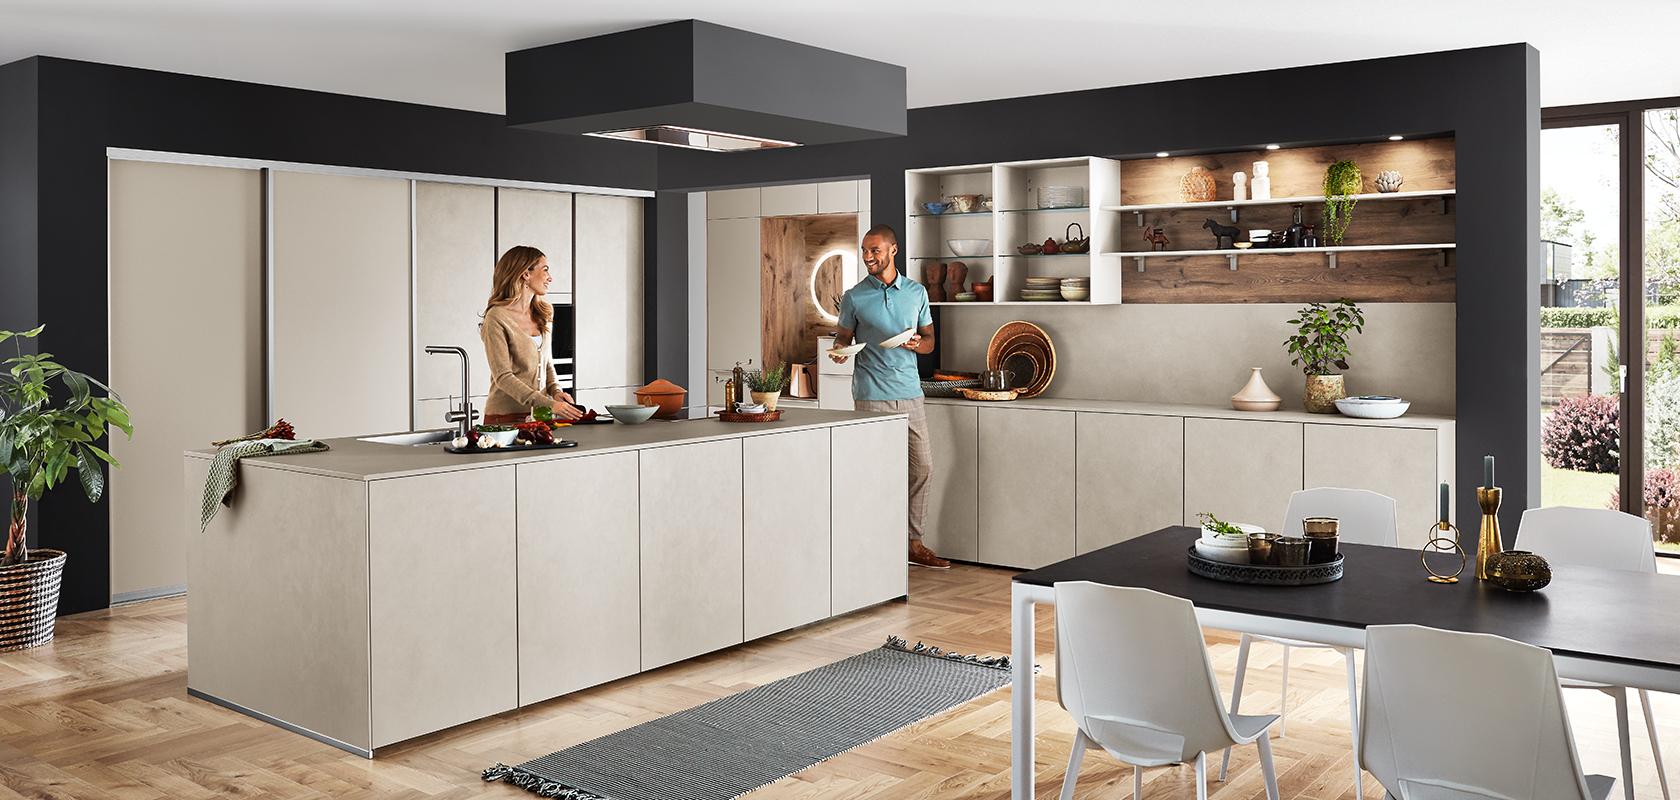 Conception élégante de cuisine moderne avec un îlot central, des étagères ouvertes et des appareils intégrés, avec un couple profitant d'une conversation au comptoir.